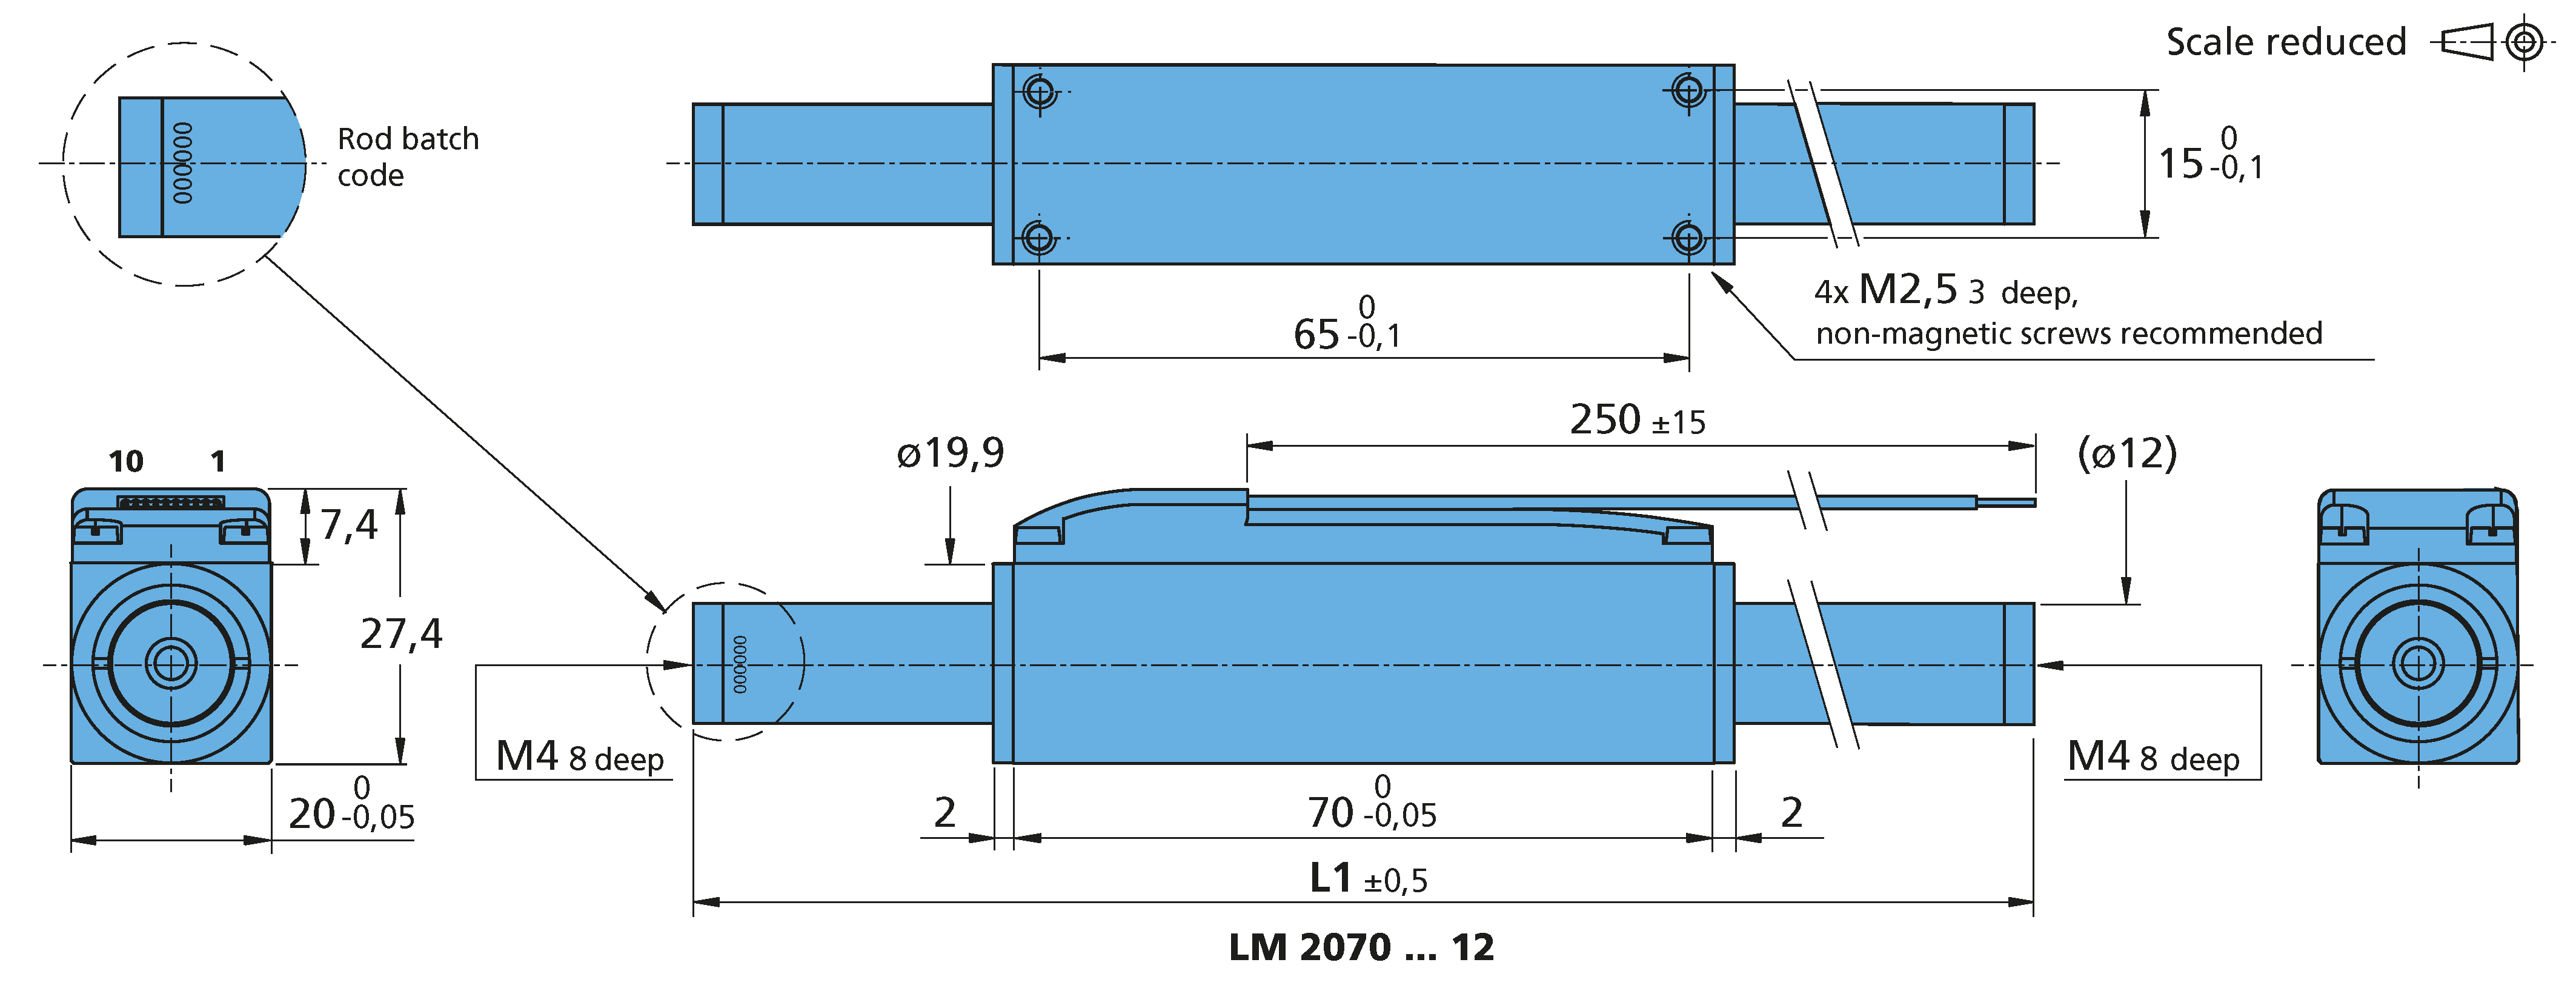 リニアDCサーボモータ Series LM 2070 ... 12